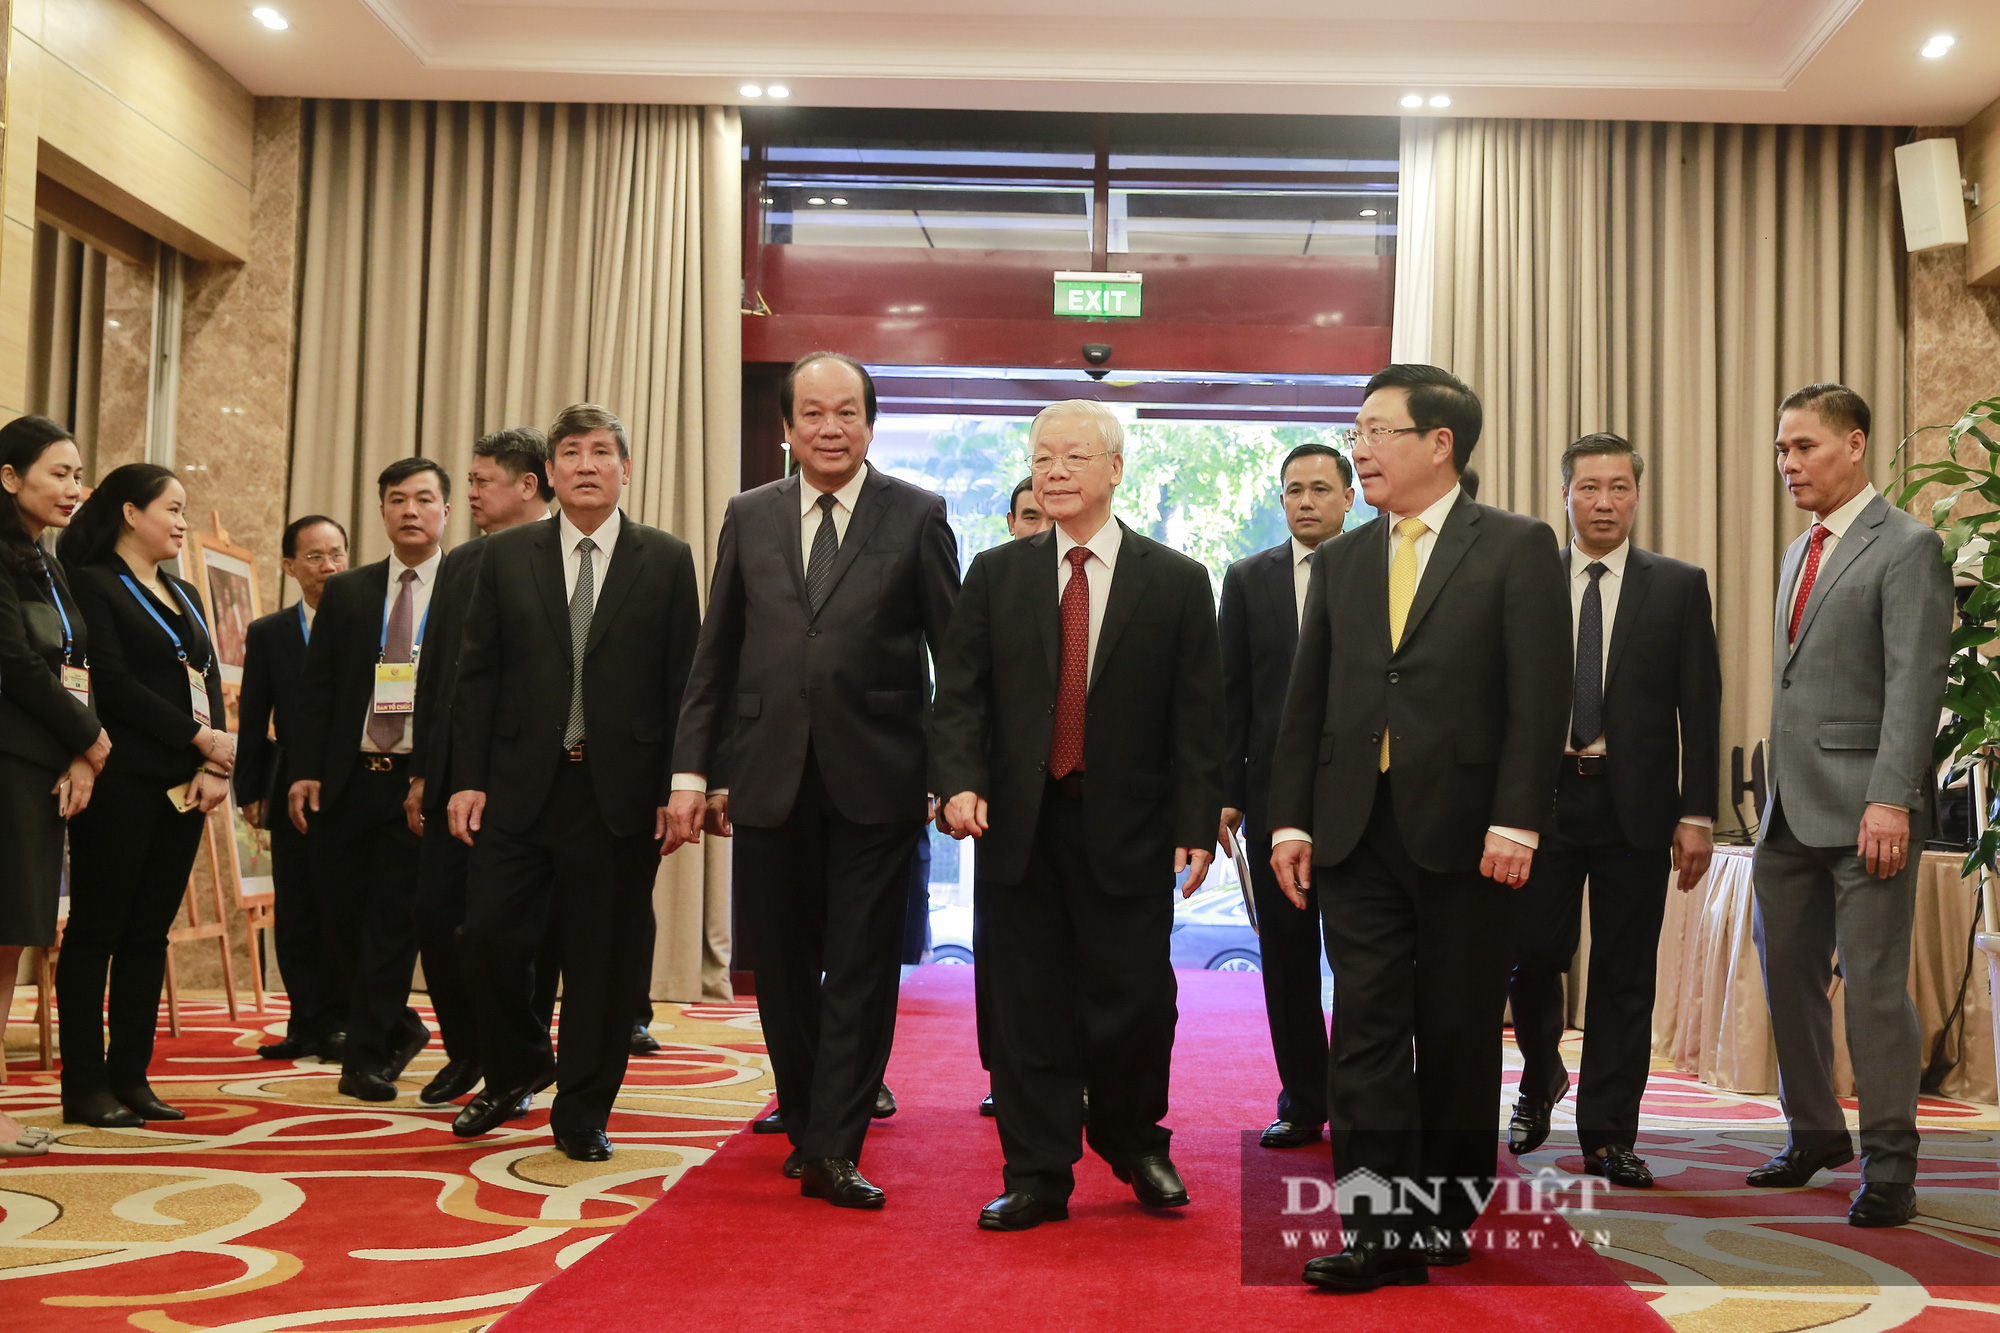 Toàn cảnh Khai mạc Hội nghị Cấp cao ASEAN lần thứ 37 - Ảnh 2.